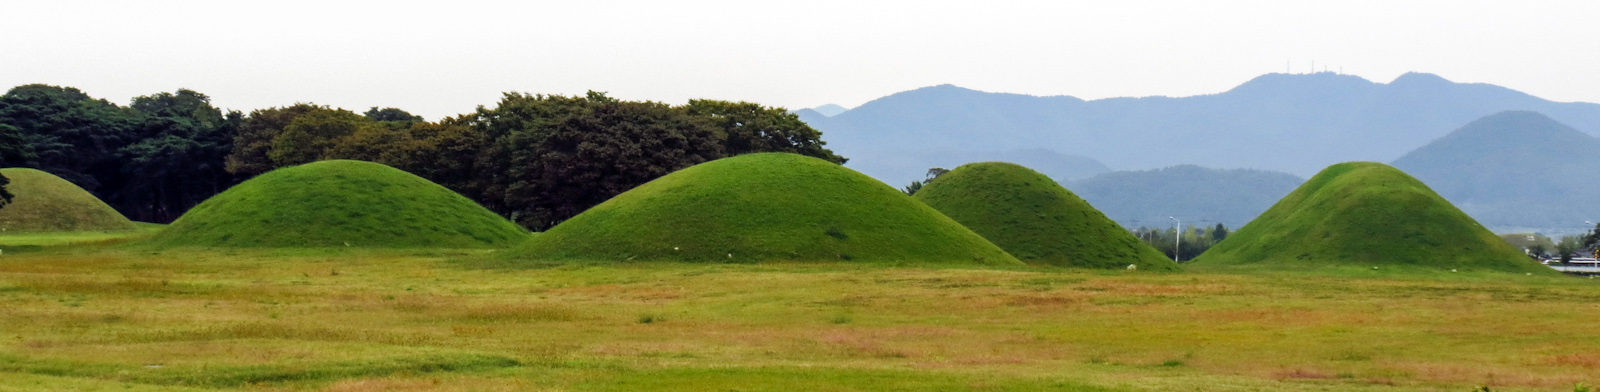 unesco-daereungwon-royal-tombs